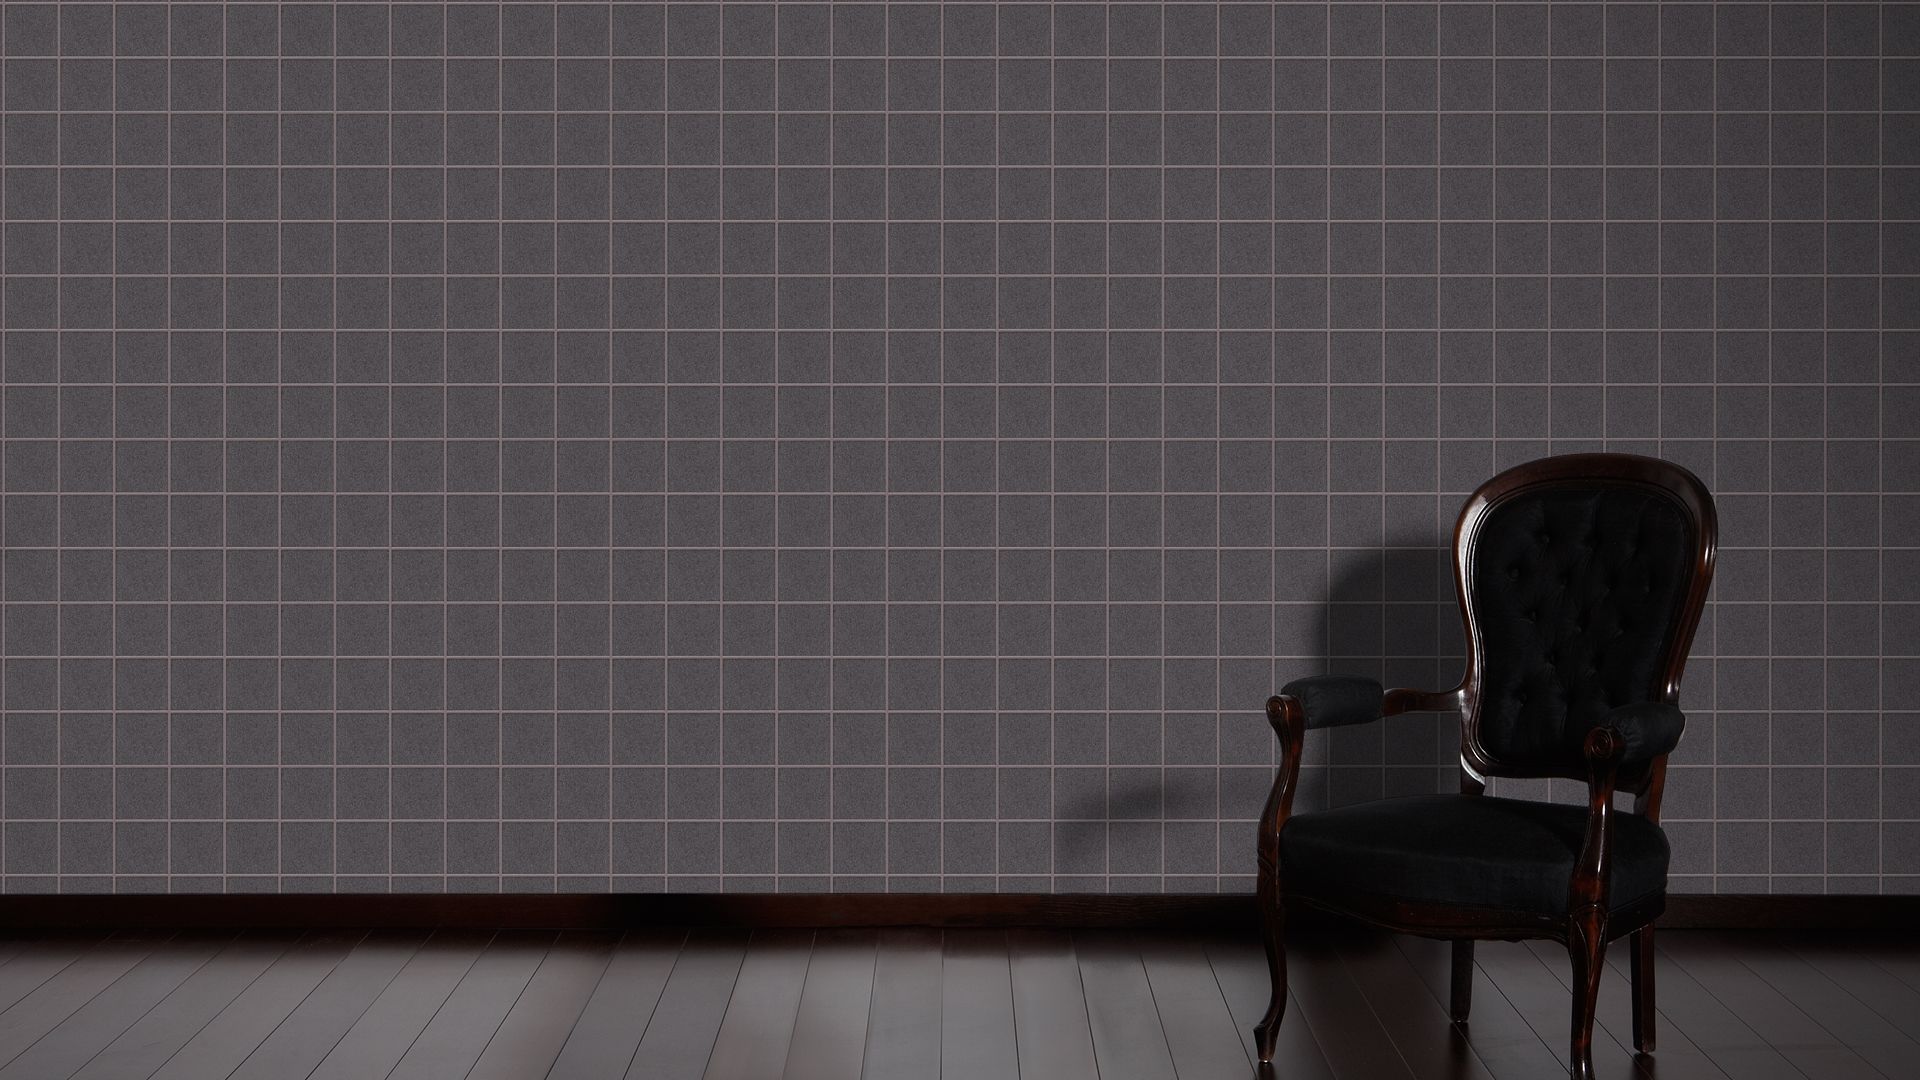 Architects Paper Luxury Wallpaper, Geometrische Tapete, schwarz, grau 306721